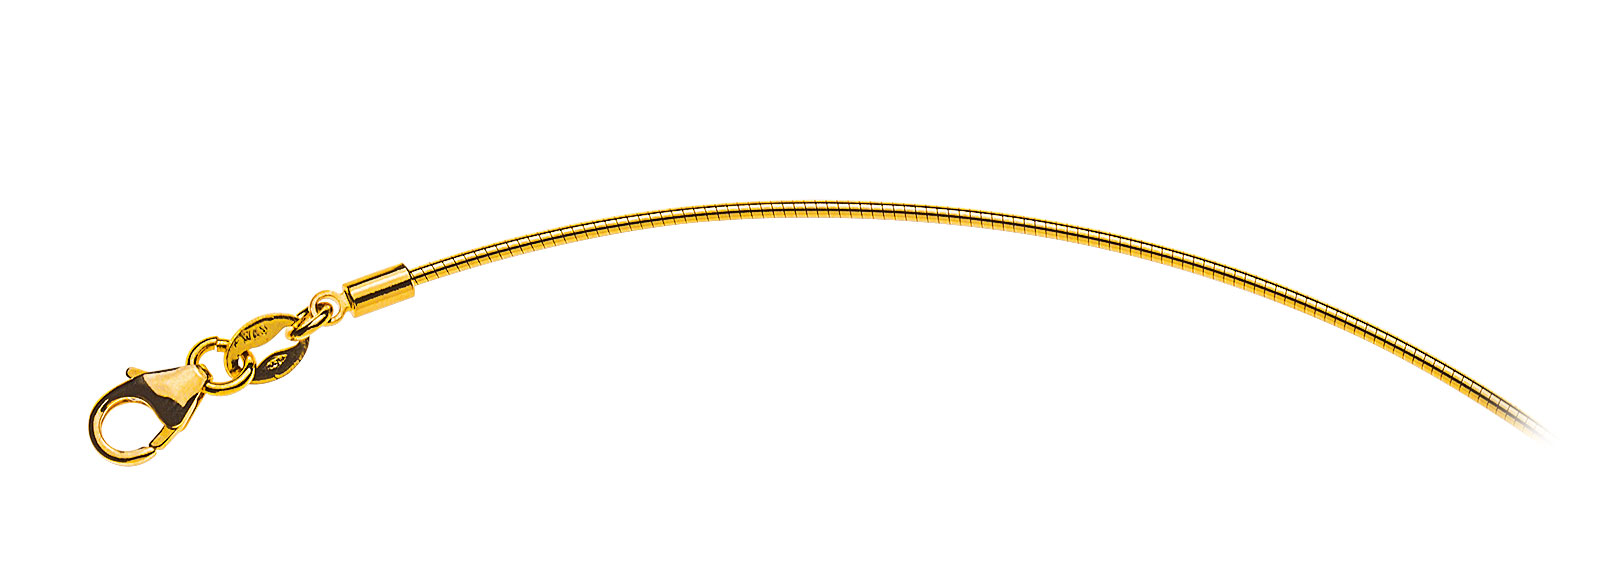 AURONOS Prestige Halskette Gelbgold 18K Omegakette 40cm 1.0mm